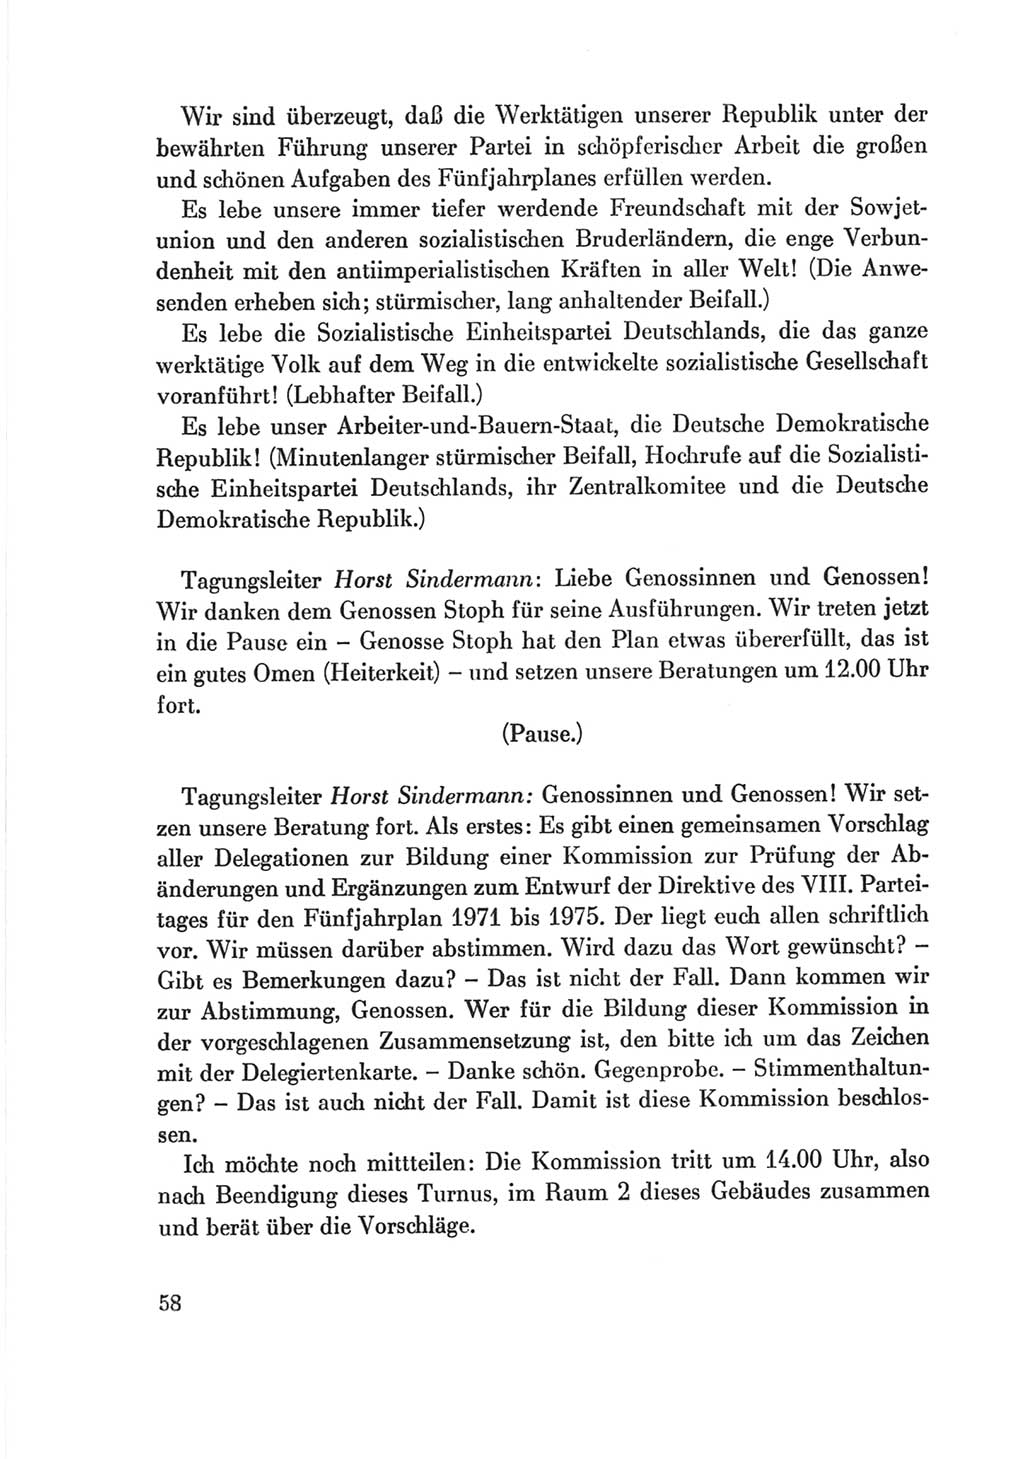 Protokoll der Verhandlungen des Ⅷ. Parteitages der Sozialistischen Einheitspartei Deutschlands (SED) [Deutsche Demokratische Republik (DDR)] 1971, Band 2, Seite 58 (Prot. Verh. Ⅷ. PT SED DDR 1971, Bd. 2, S. 58)